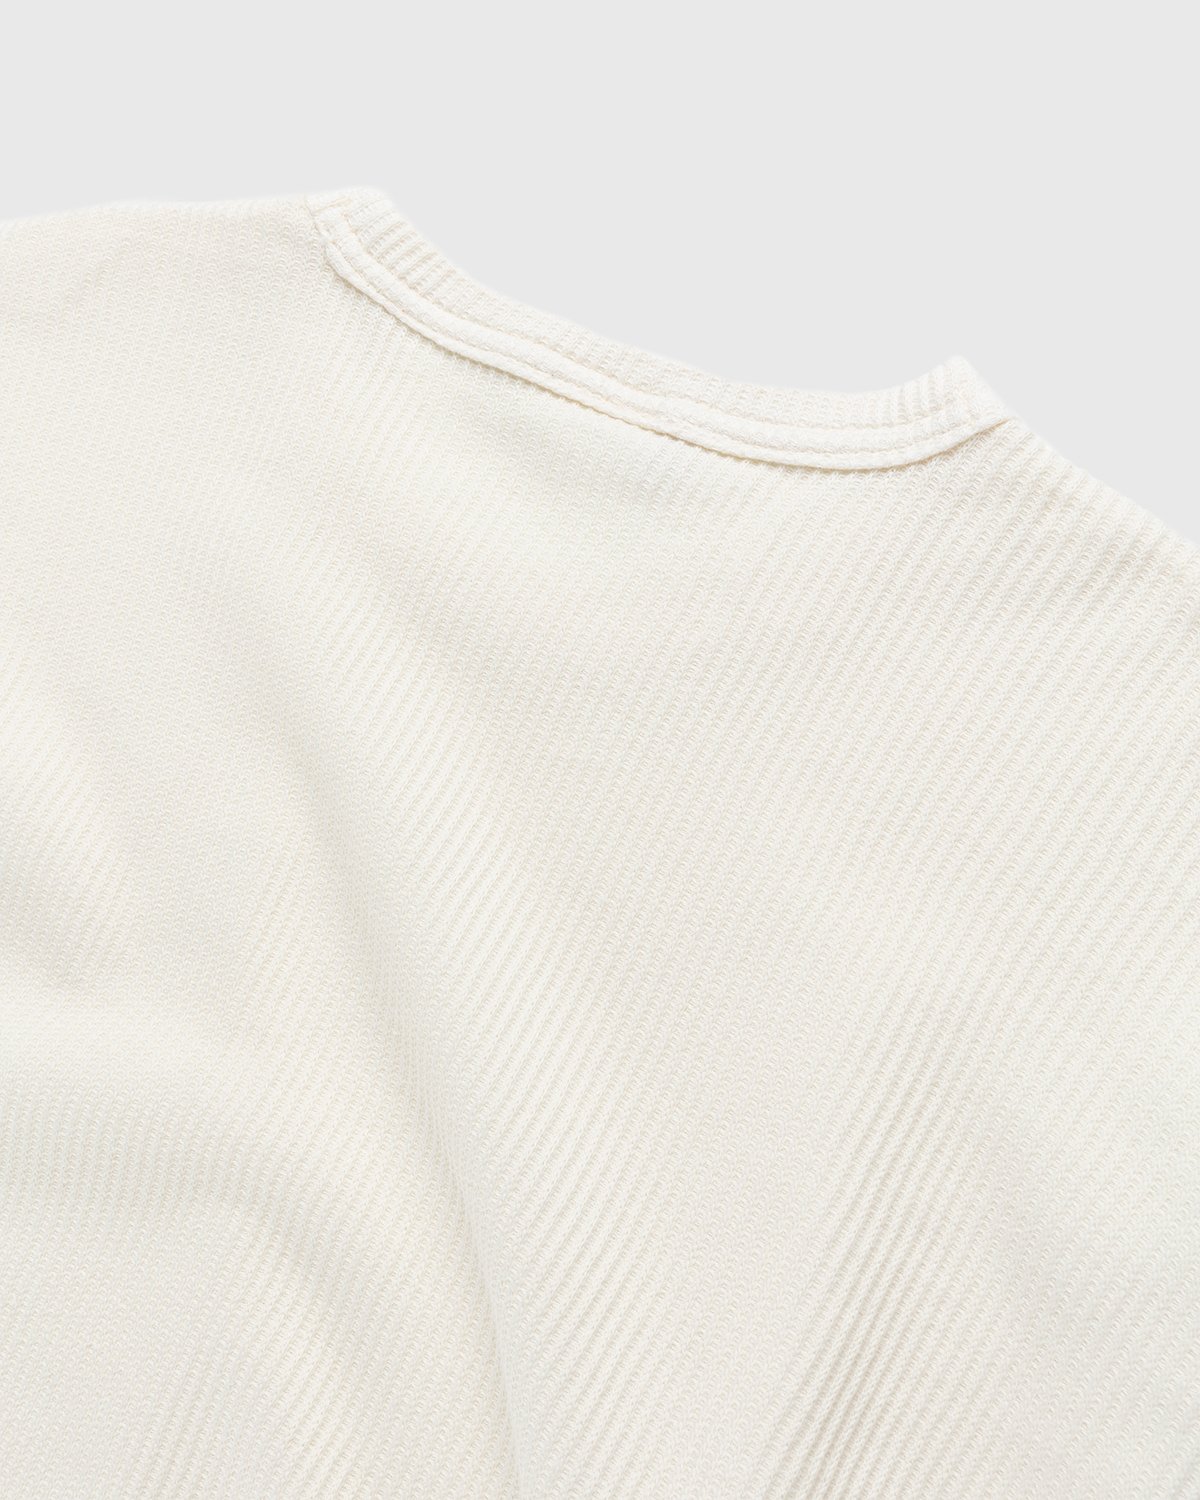 Reebok - Classics Natural Dye Waffle Crew Sweatshirt Non Dyed - Clothing - White - Image 5